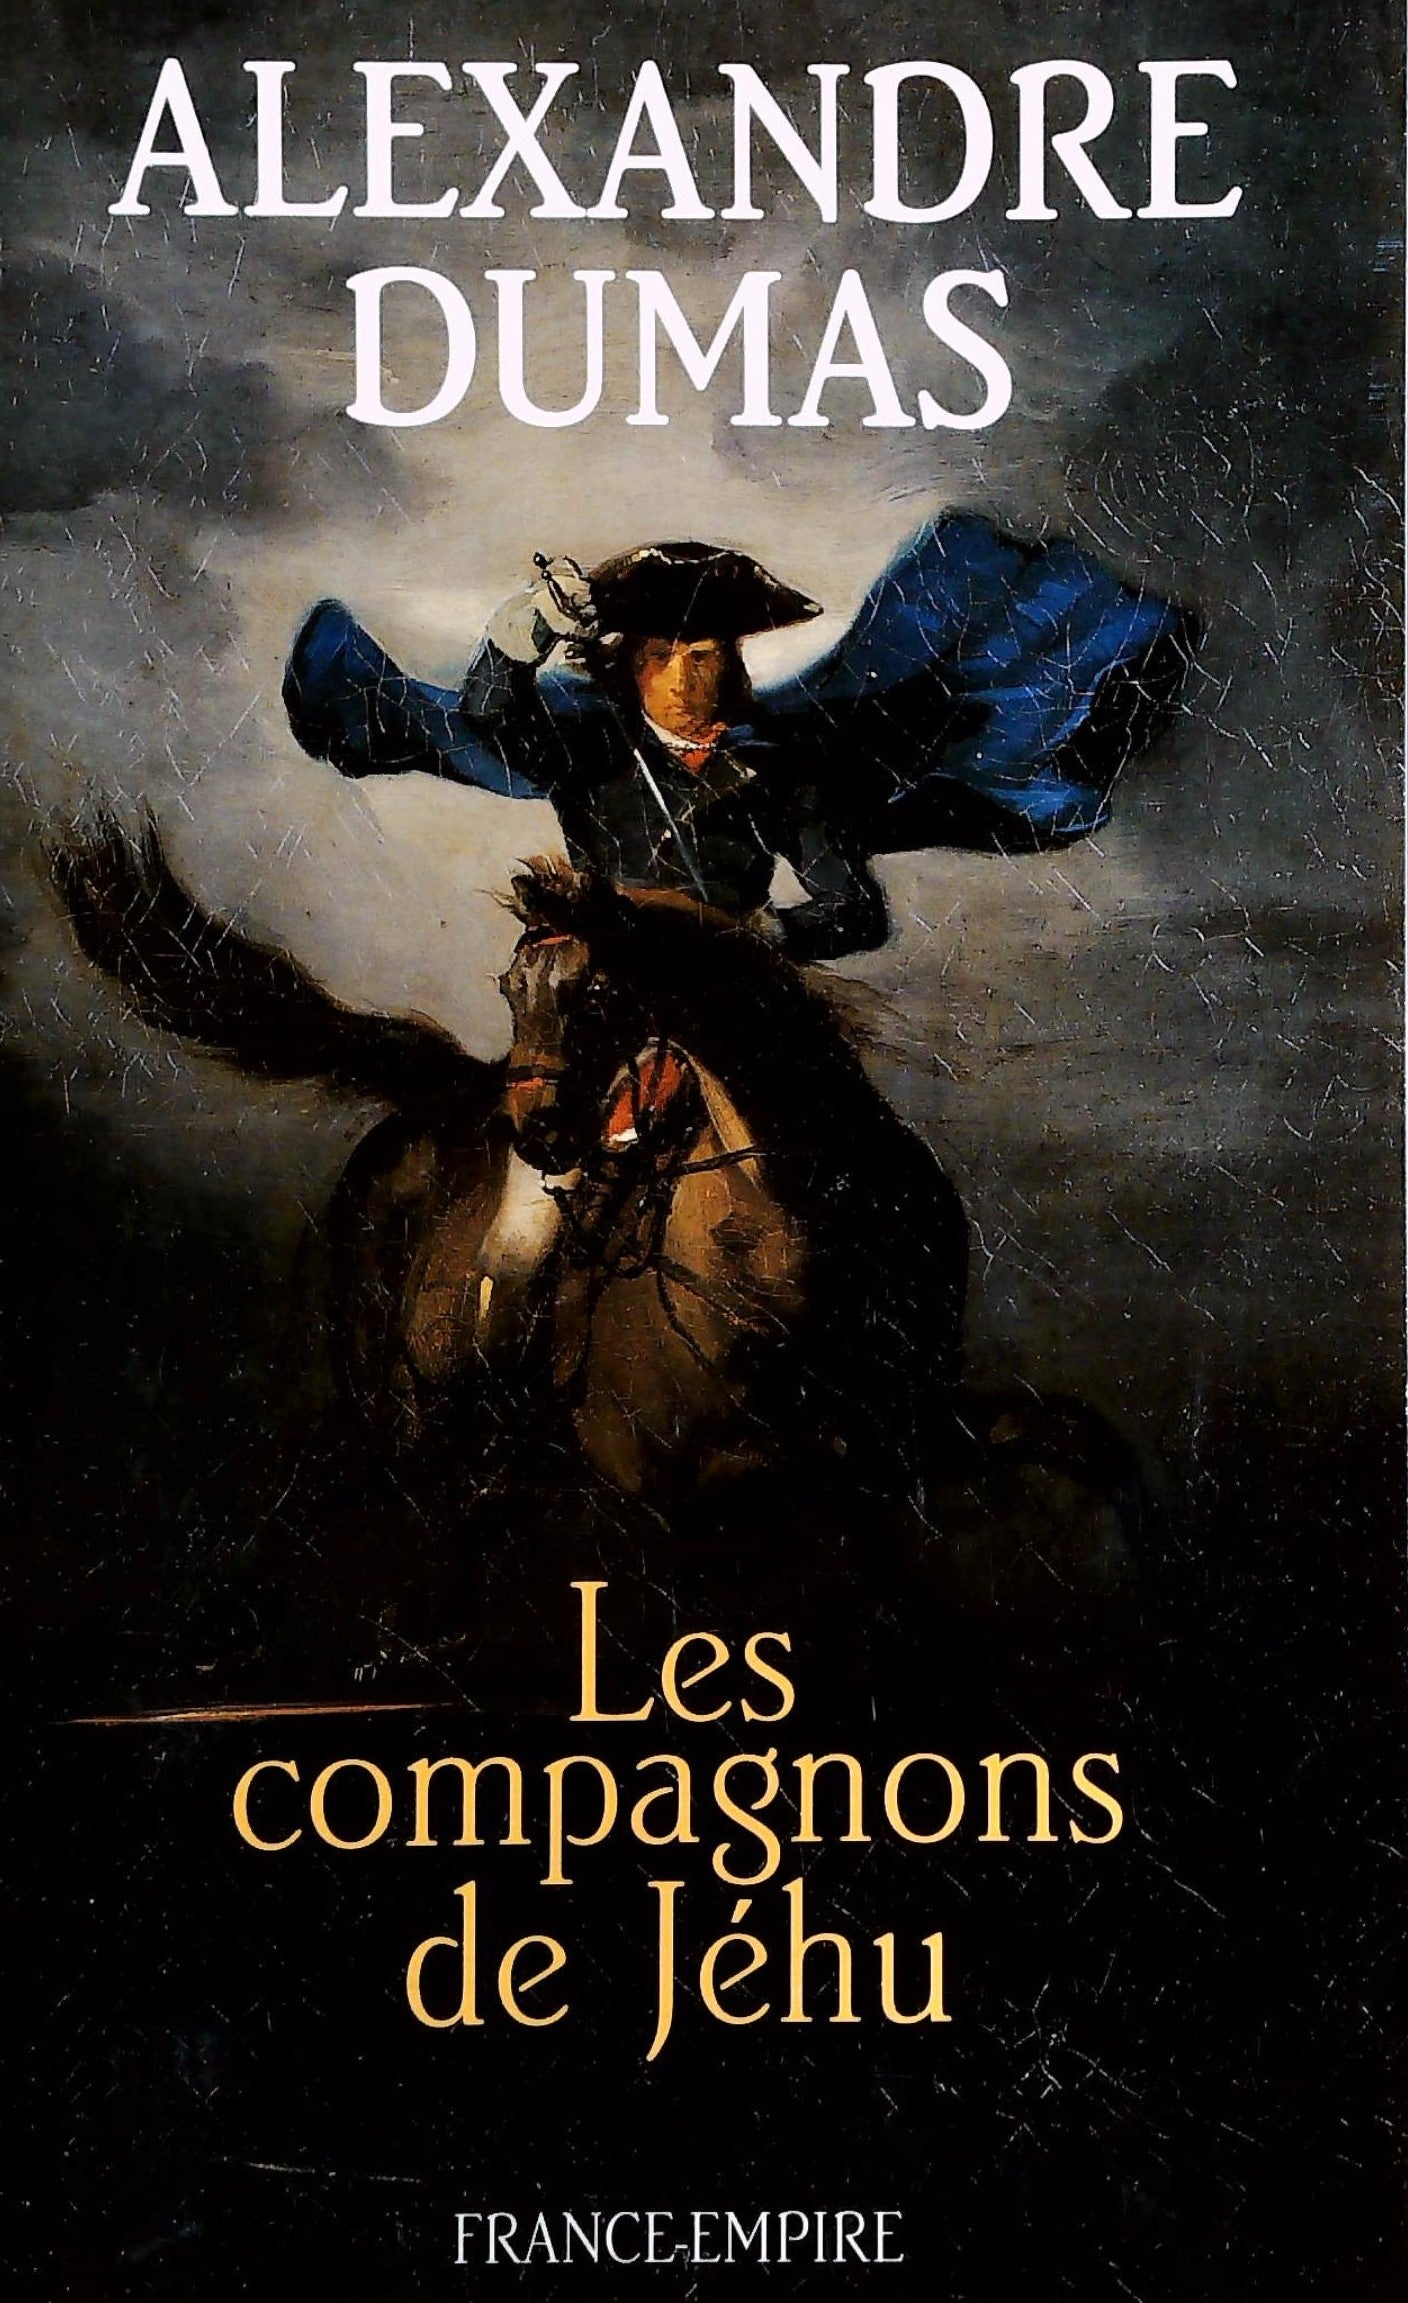 Livre ISBN 2704808783 Les compagnons de Jéhu (Alexandre Dumas)